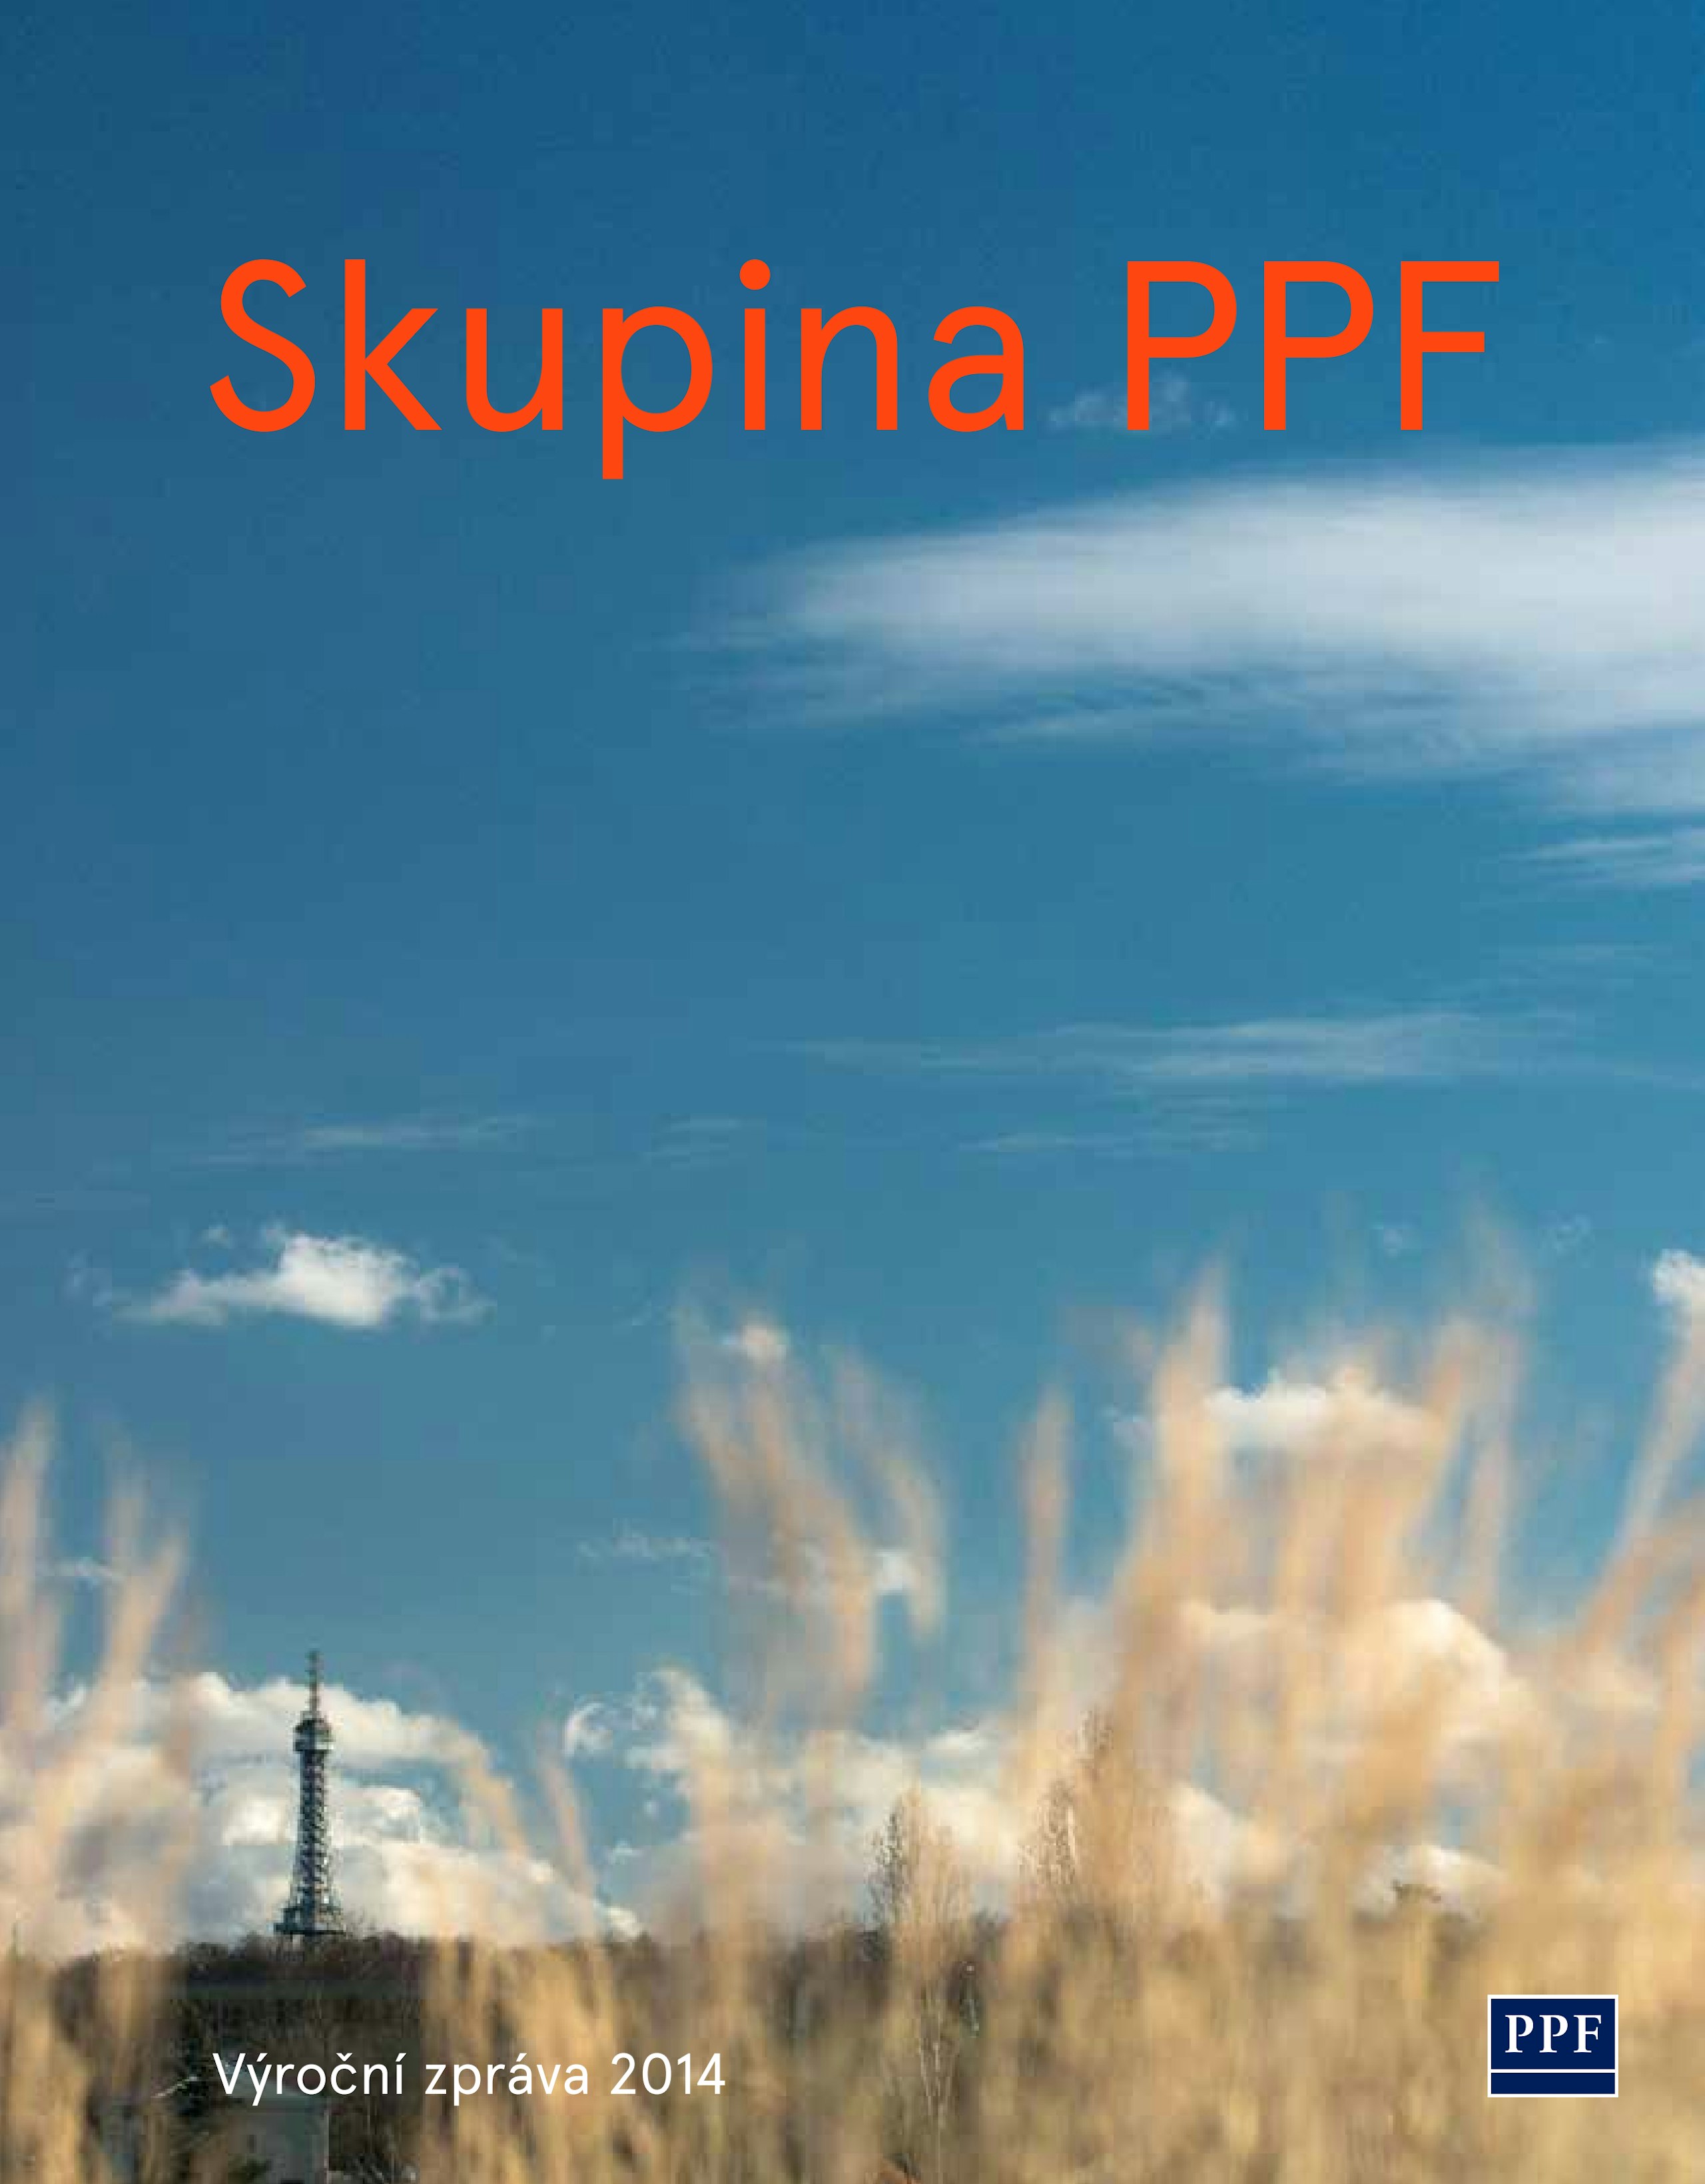 PPF Group N.V. Výroční zpráva 2014